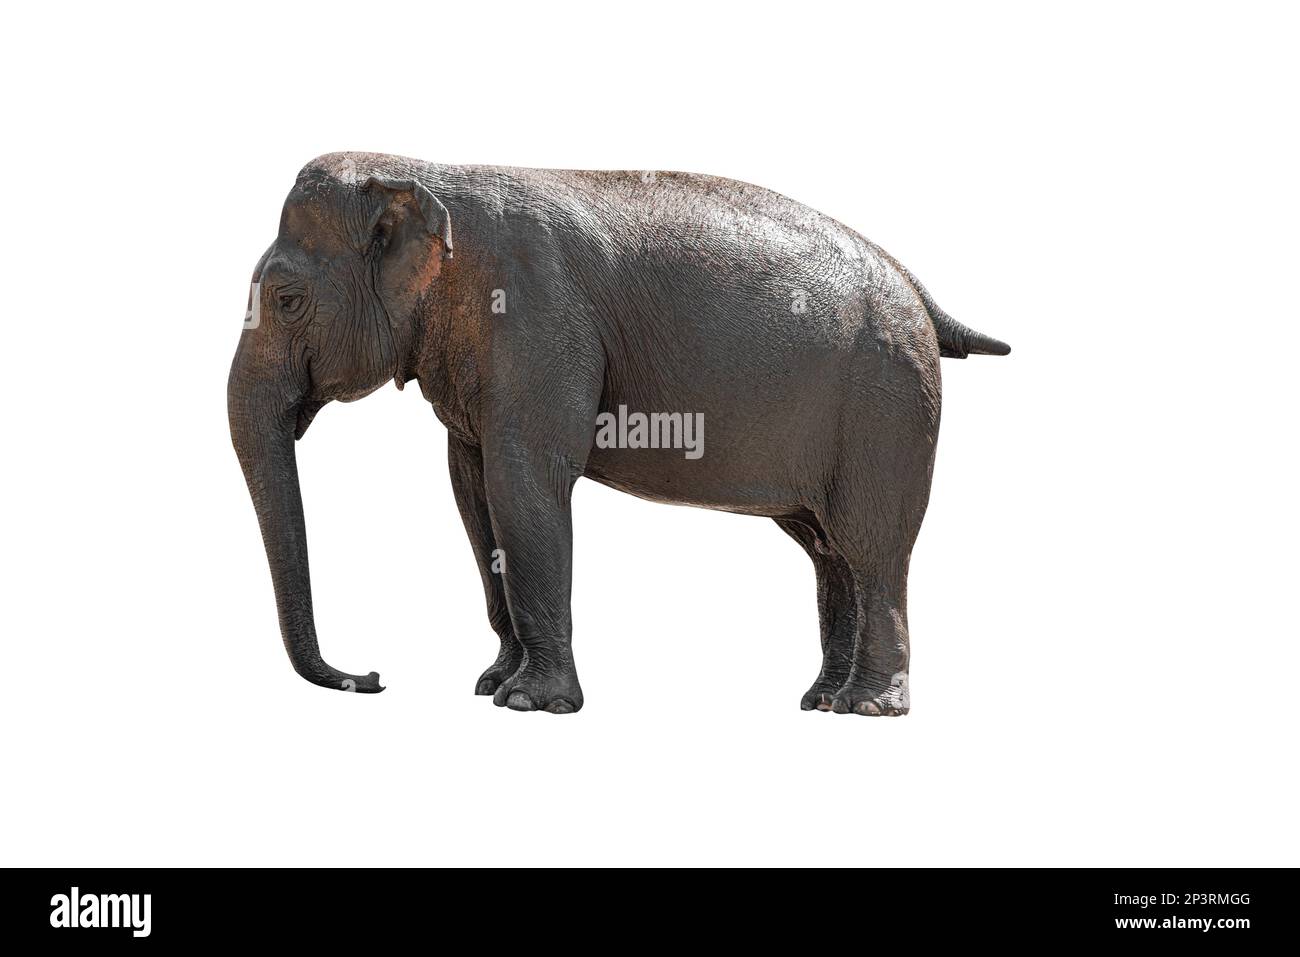 Indian elephant isolated on white background Stock Photo